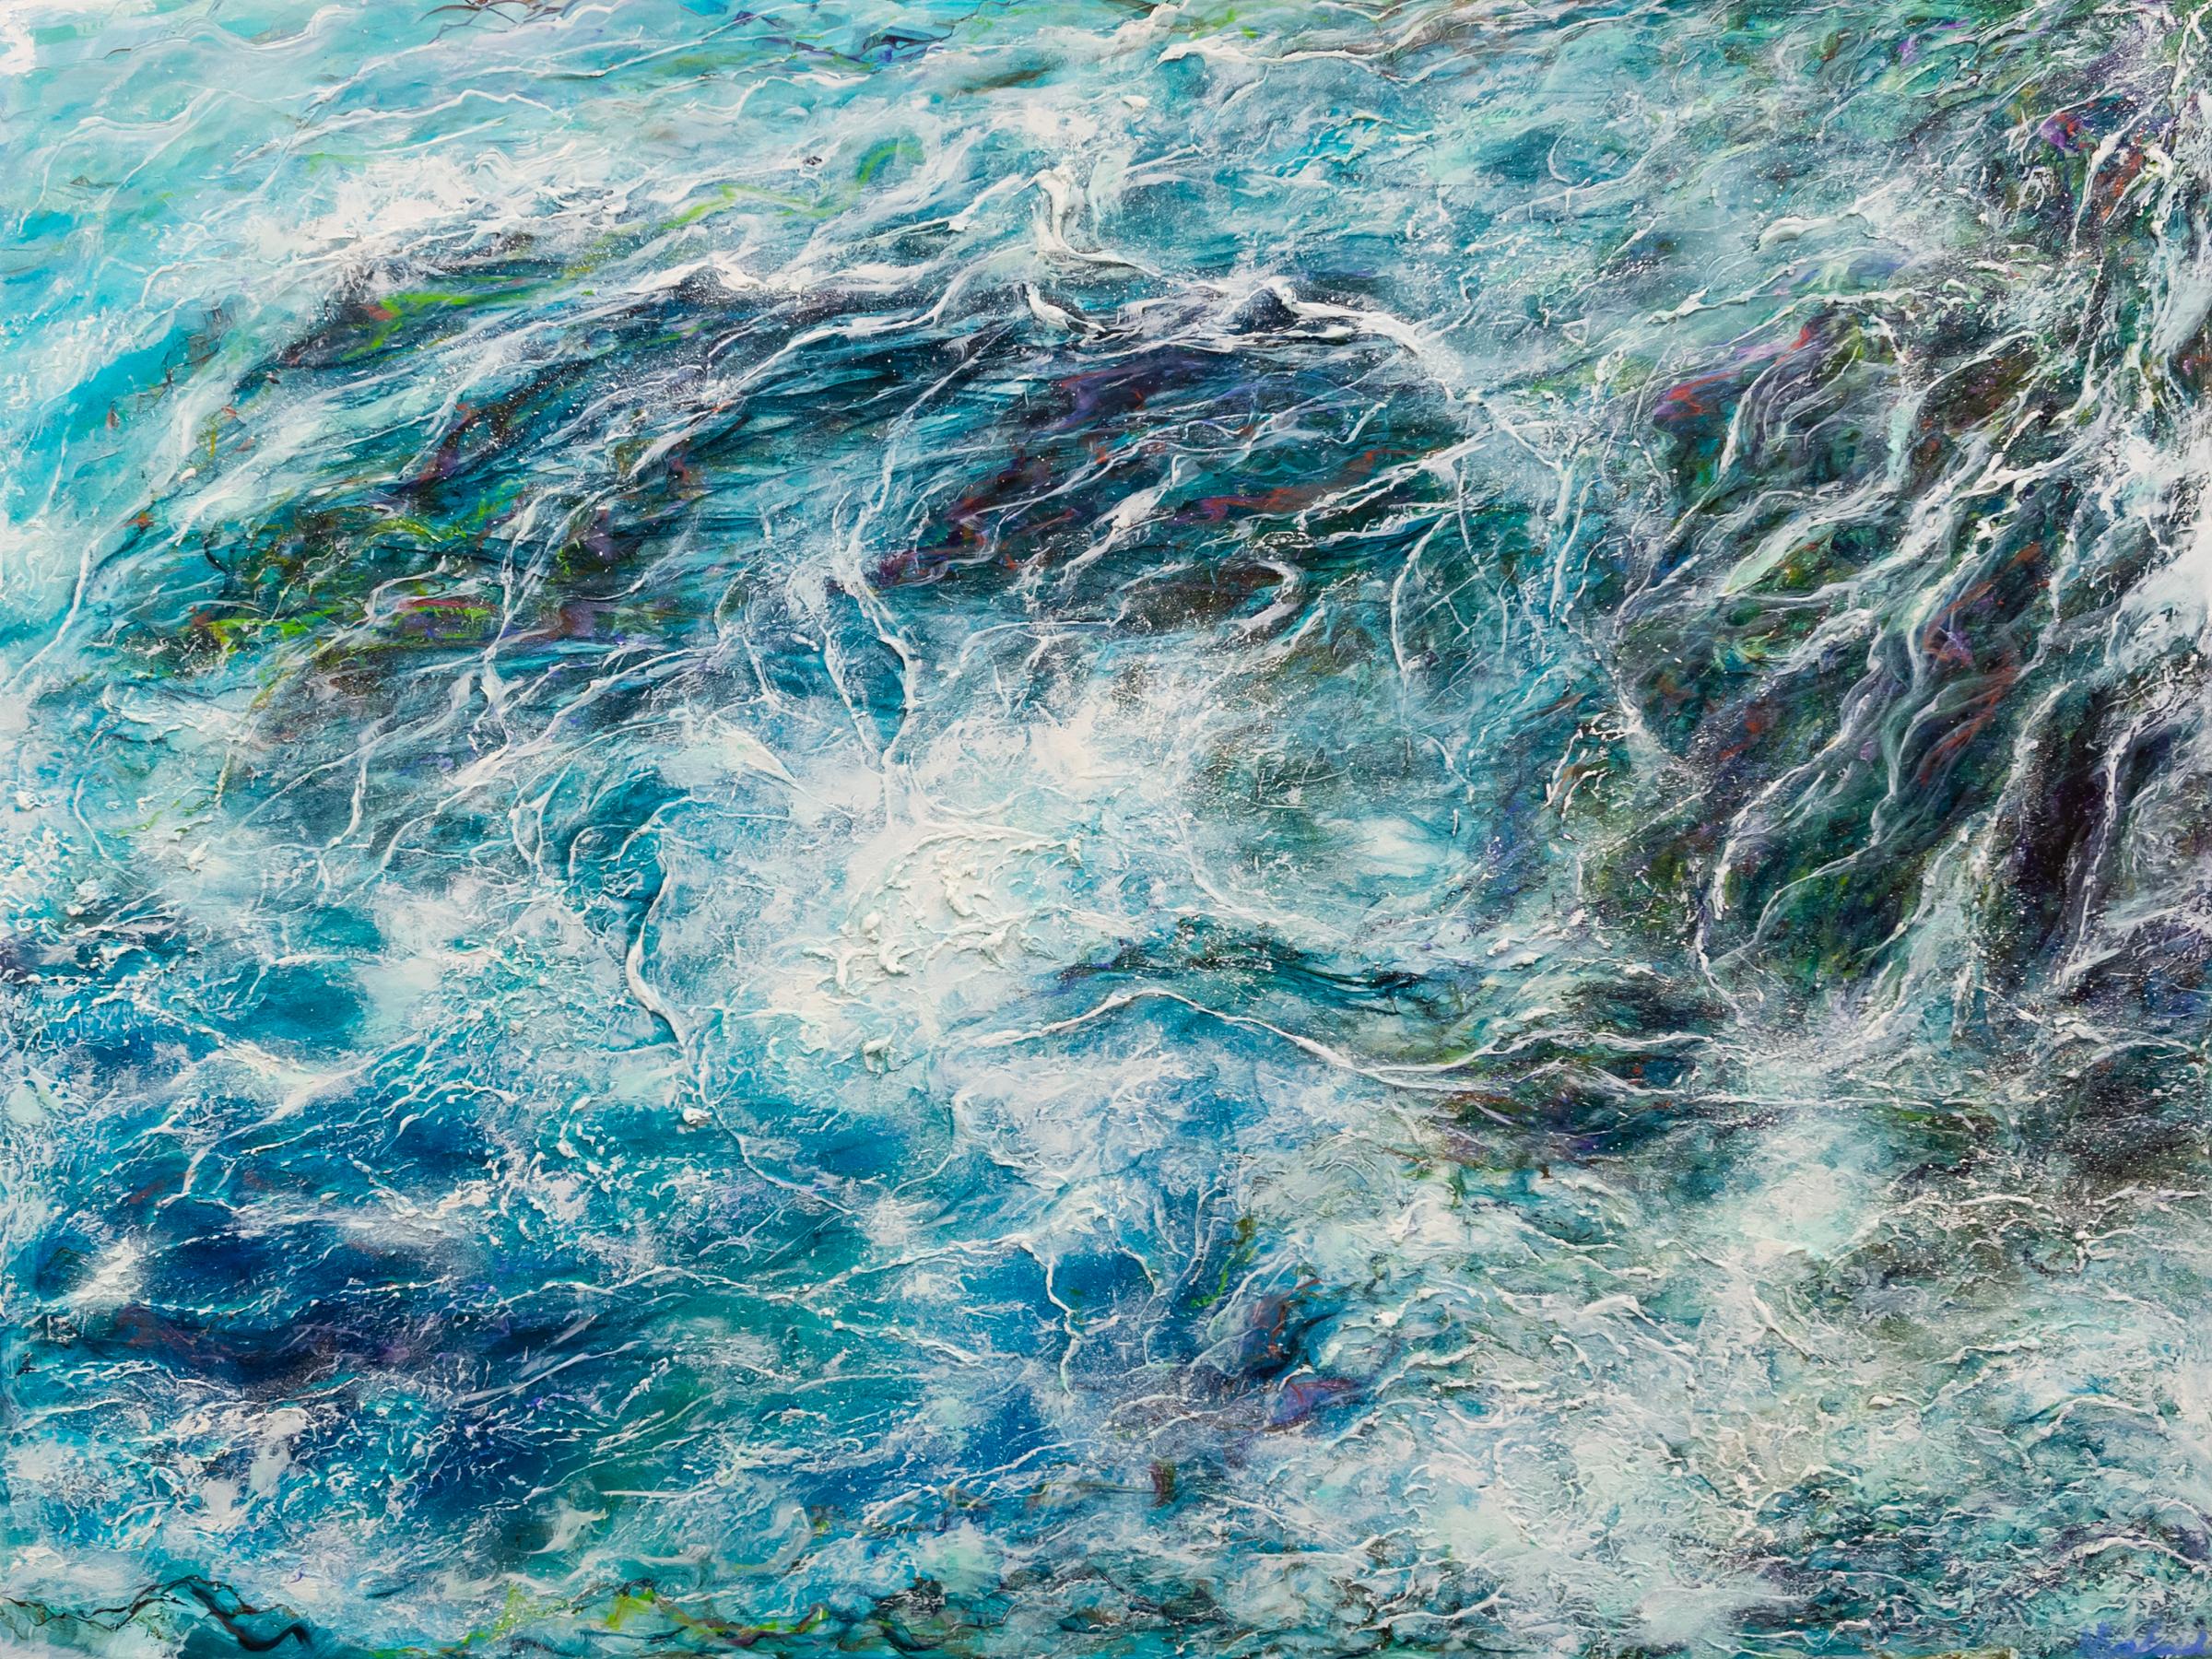 Nikki Baxendale Figurative Painting – Kelp Web-originale moderne abstrakte Meereslandschaft-Ozean-Ölgemälde-zeitgenössische Kunst